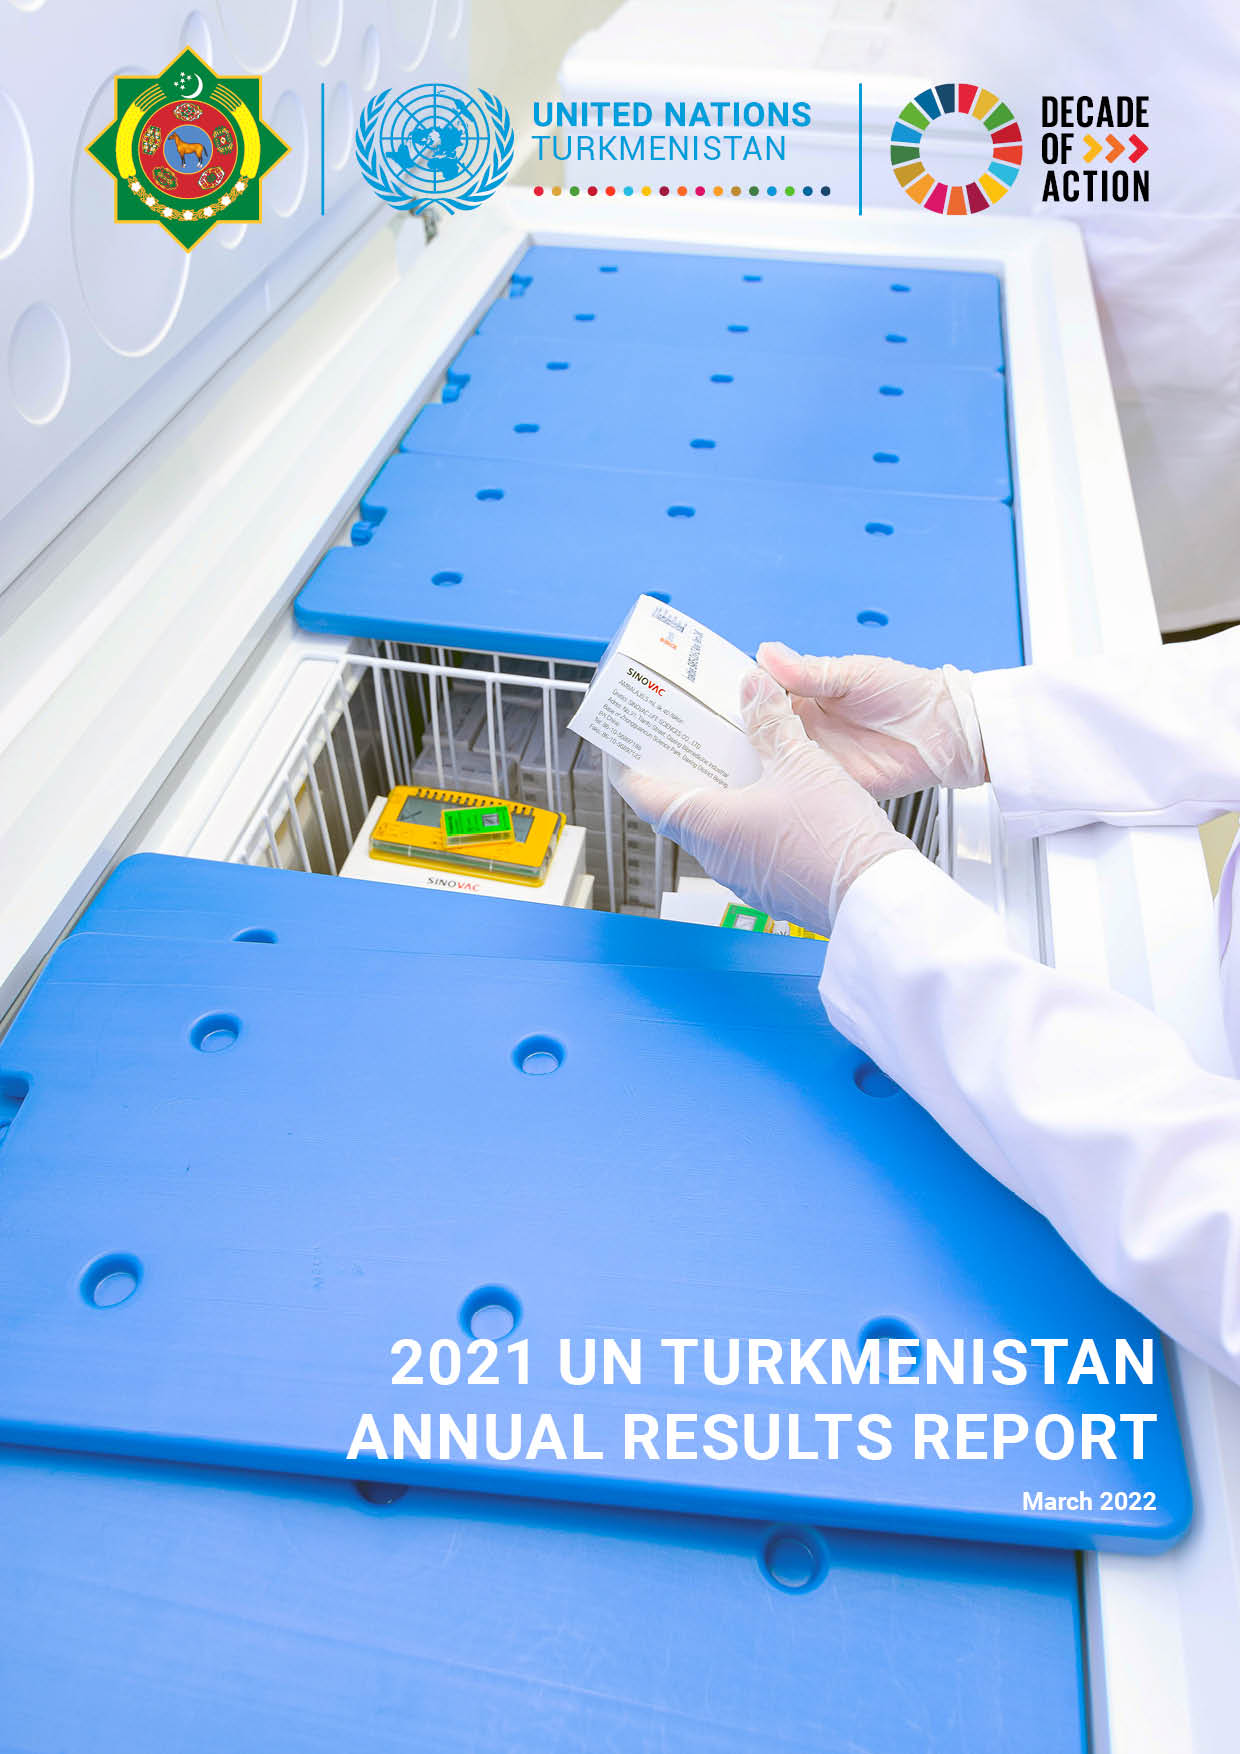 UN Turkmenistan Annual Results Report for 2021